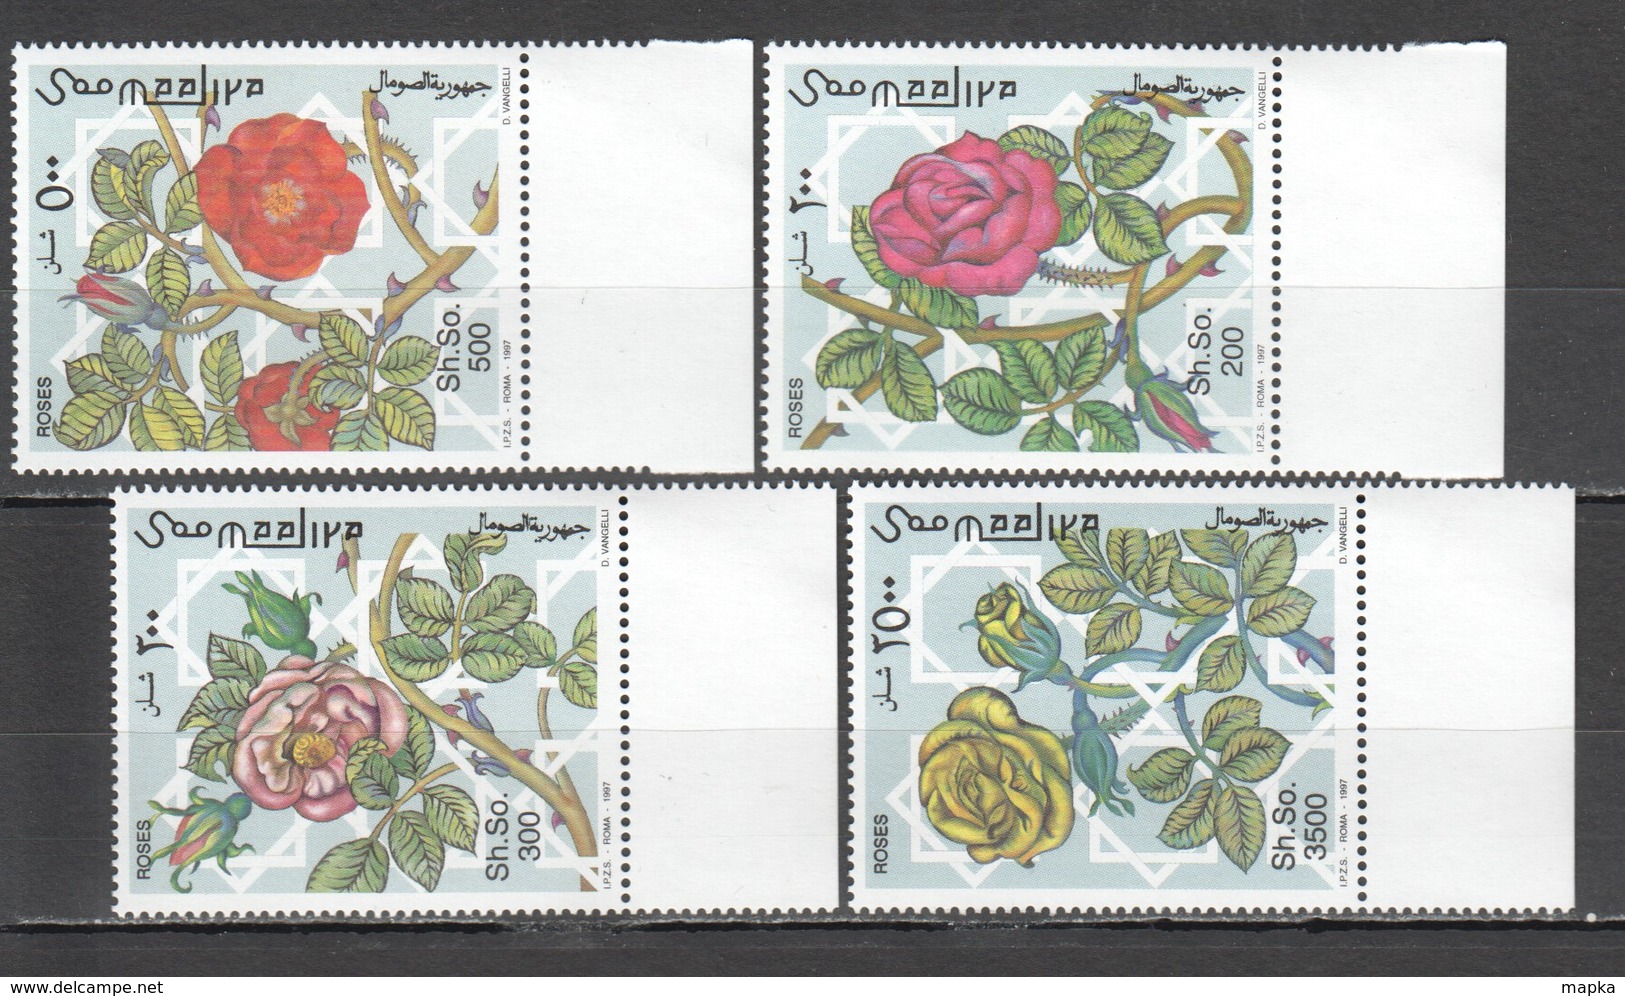 P1517 1997 SOOMAALIYA FLORA FLOWERS ROSES MICHEL 20 EURO 1SET MNH - Roses